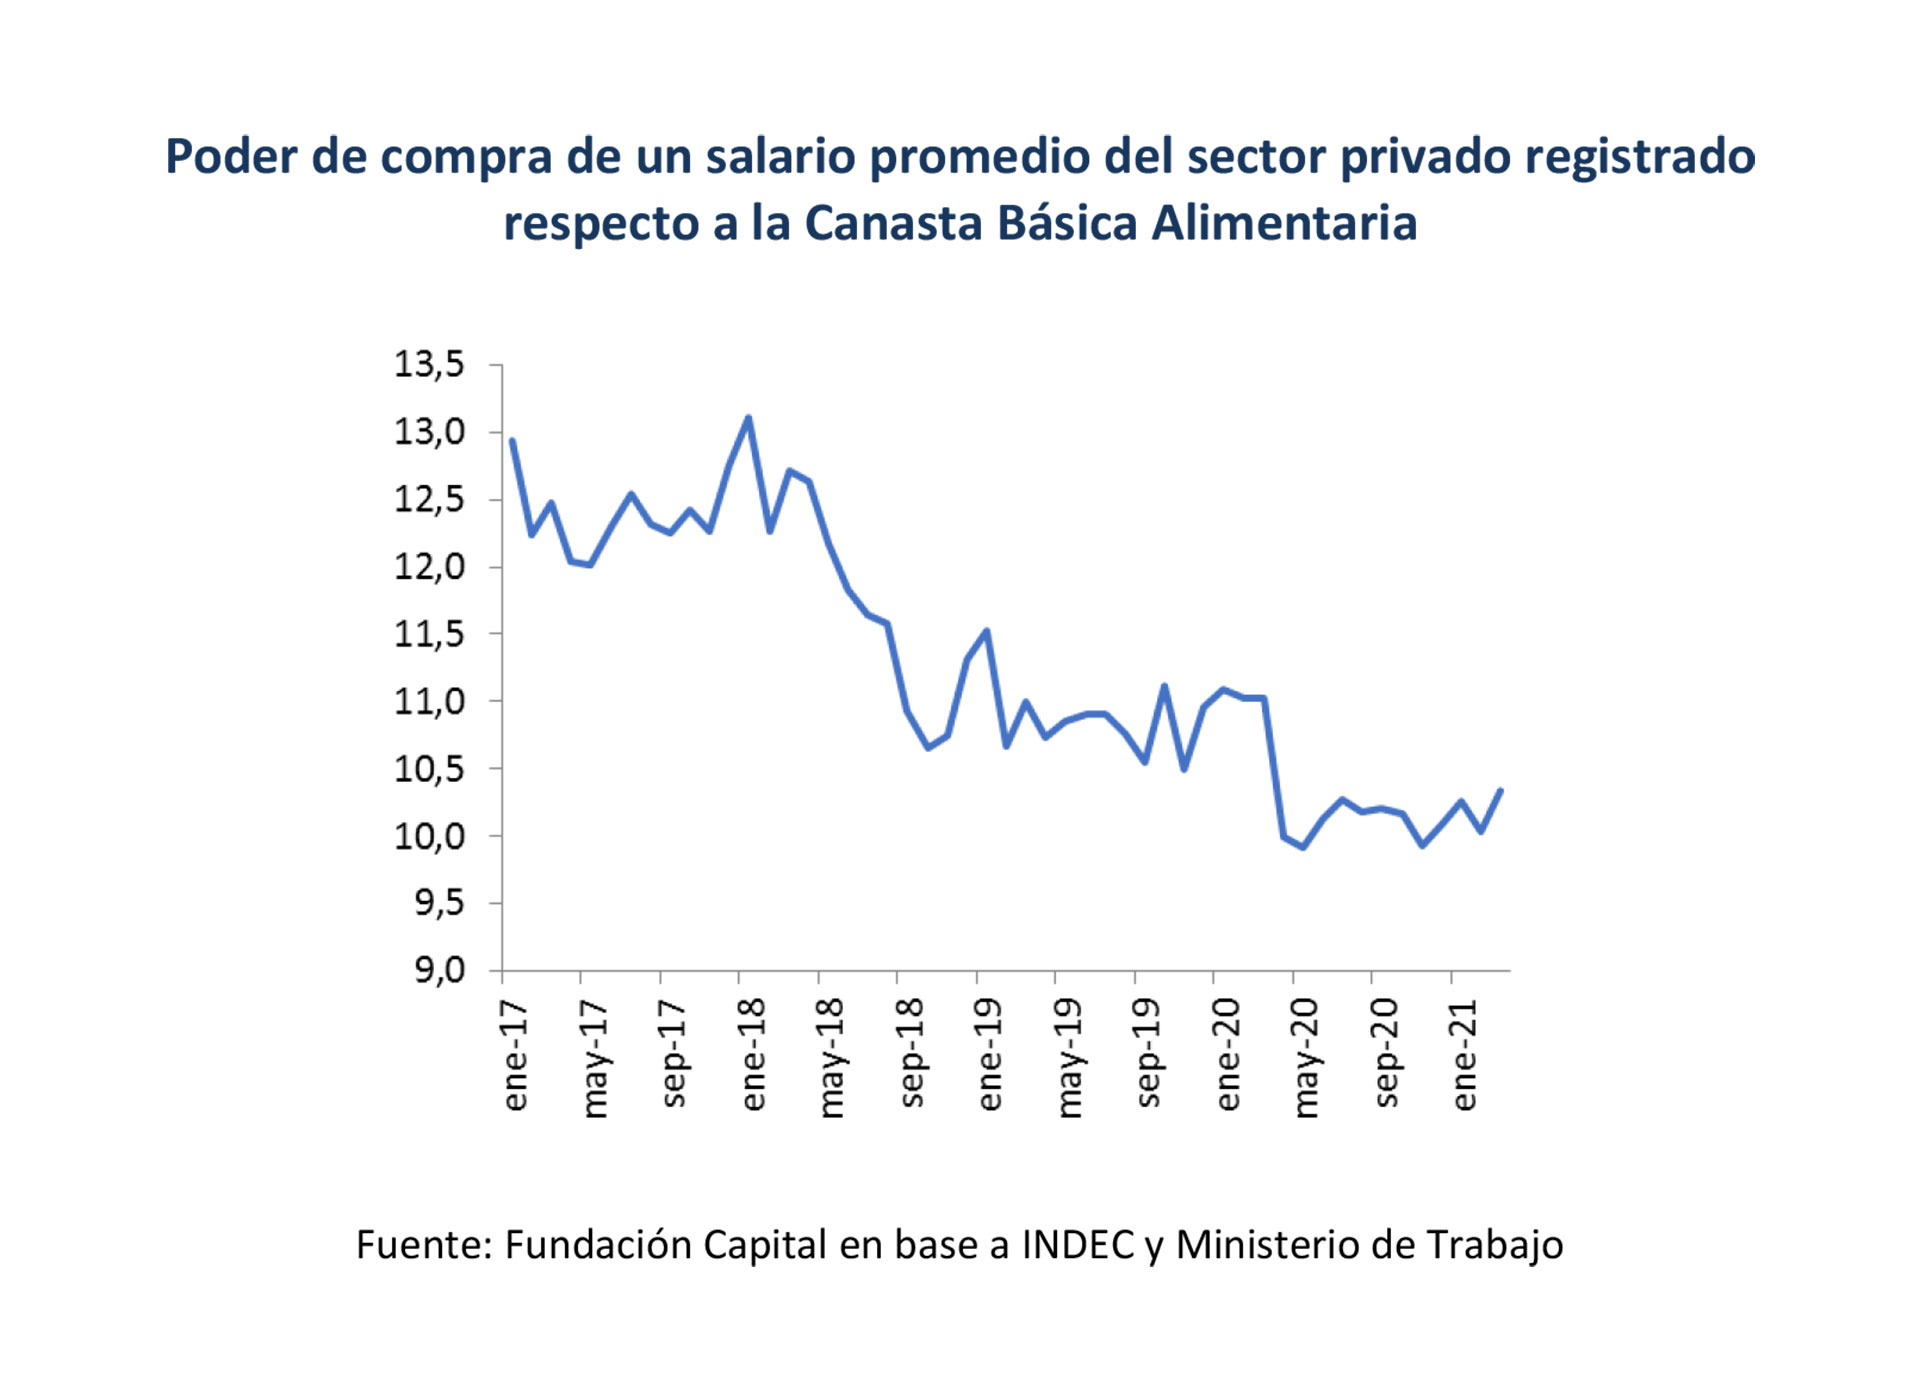 Poder de compra de un salario promedio del sector privado registrado respecto a la Canasta Básica Alimentaria. Fuente: Fundación Capital con datos oficiales